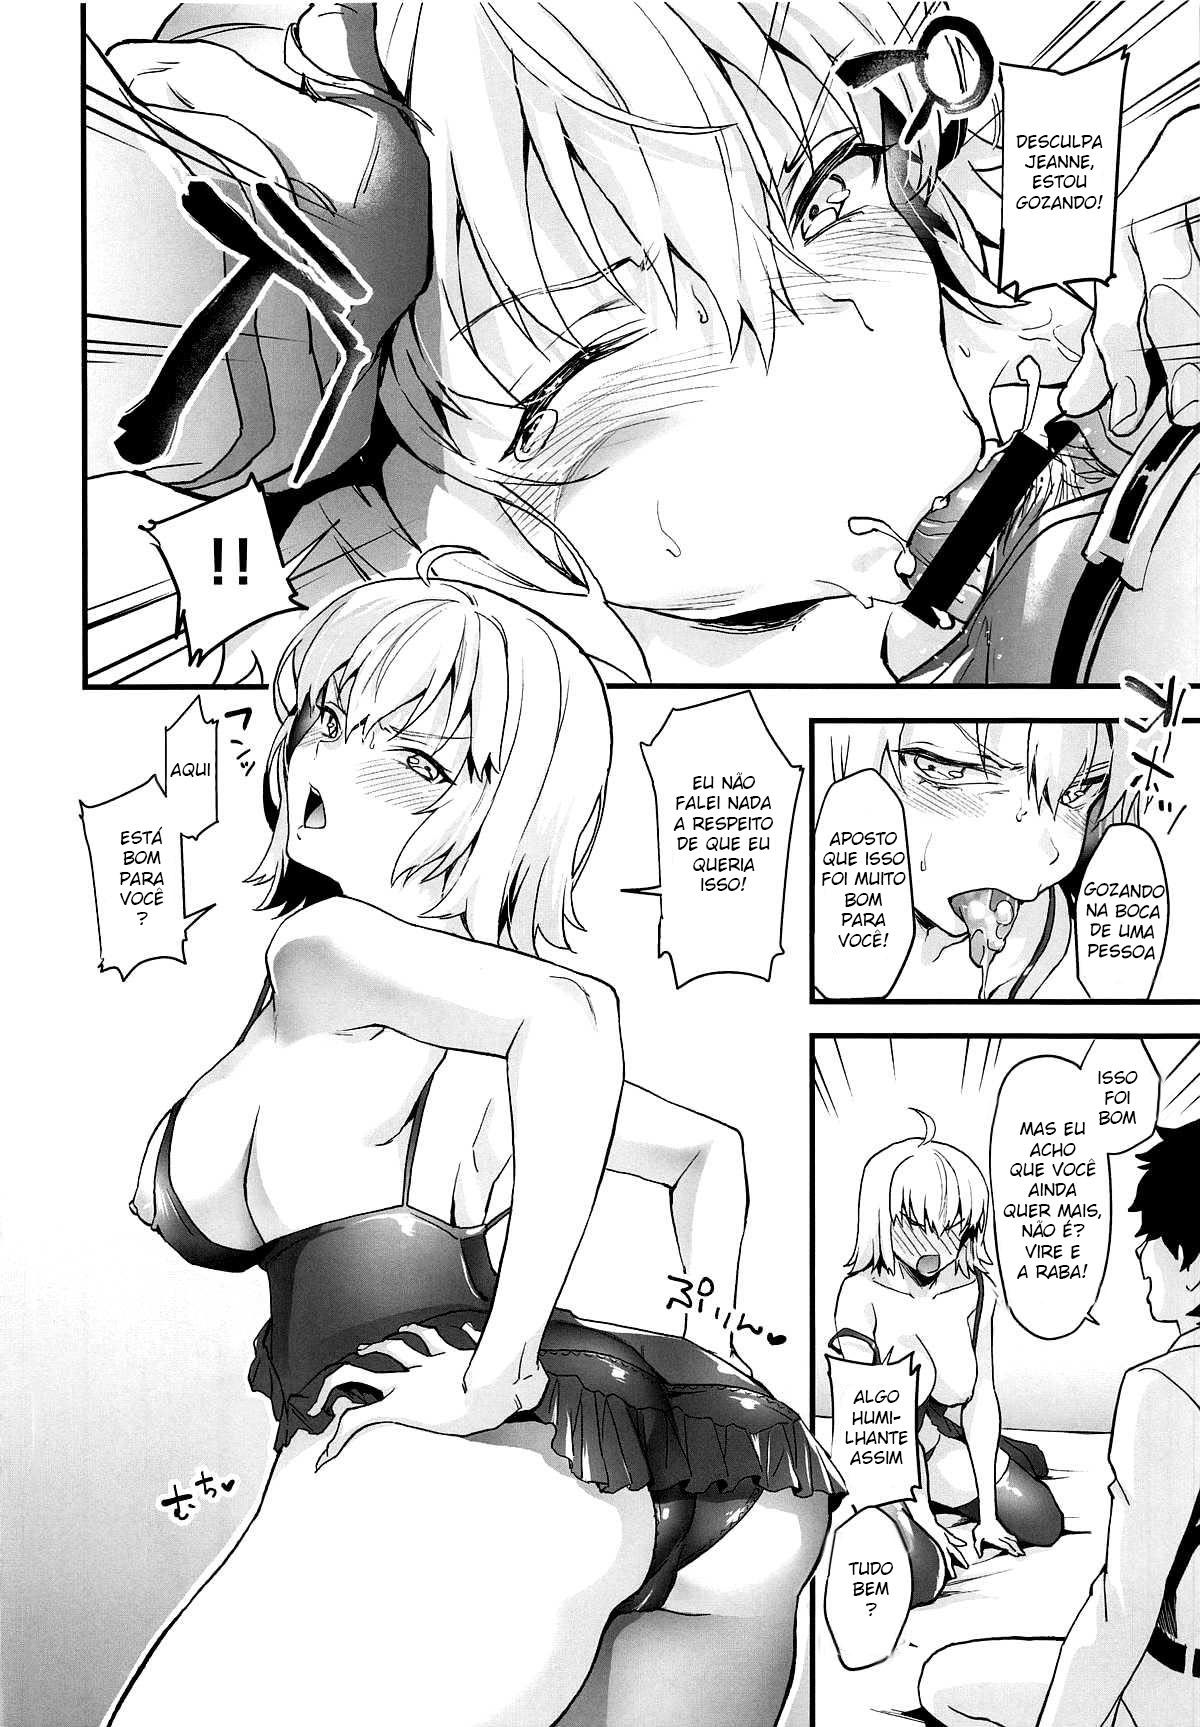 Primeira Experiência Sexual da Jeanne